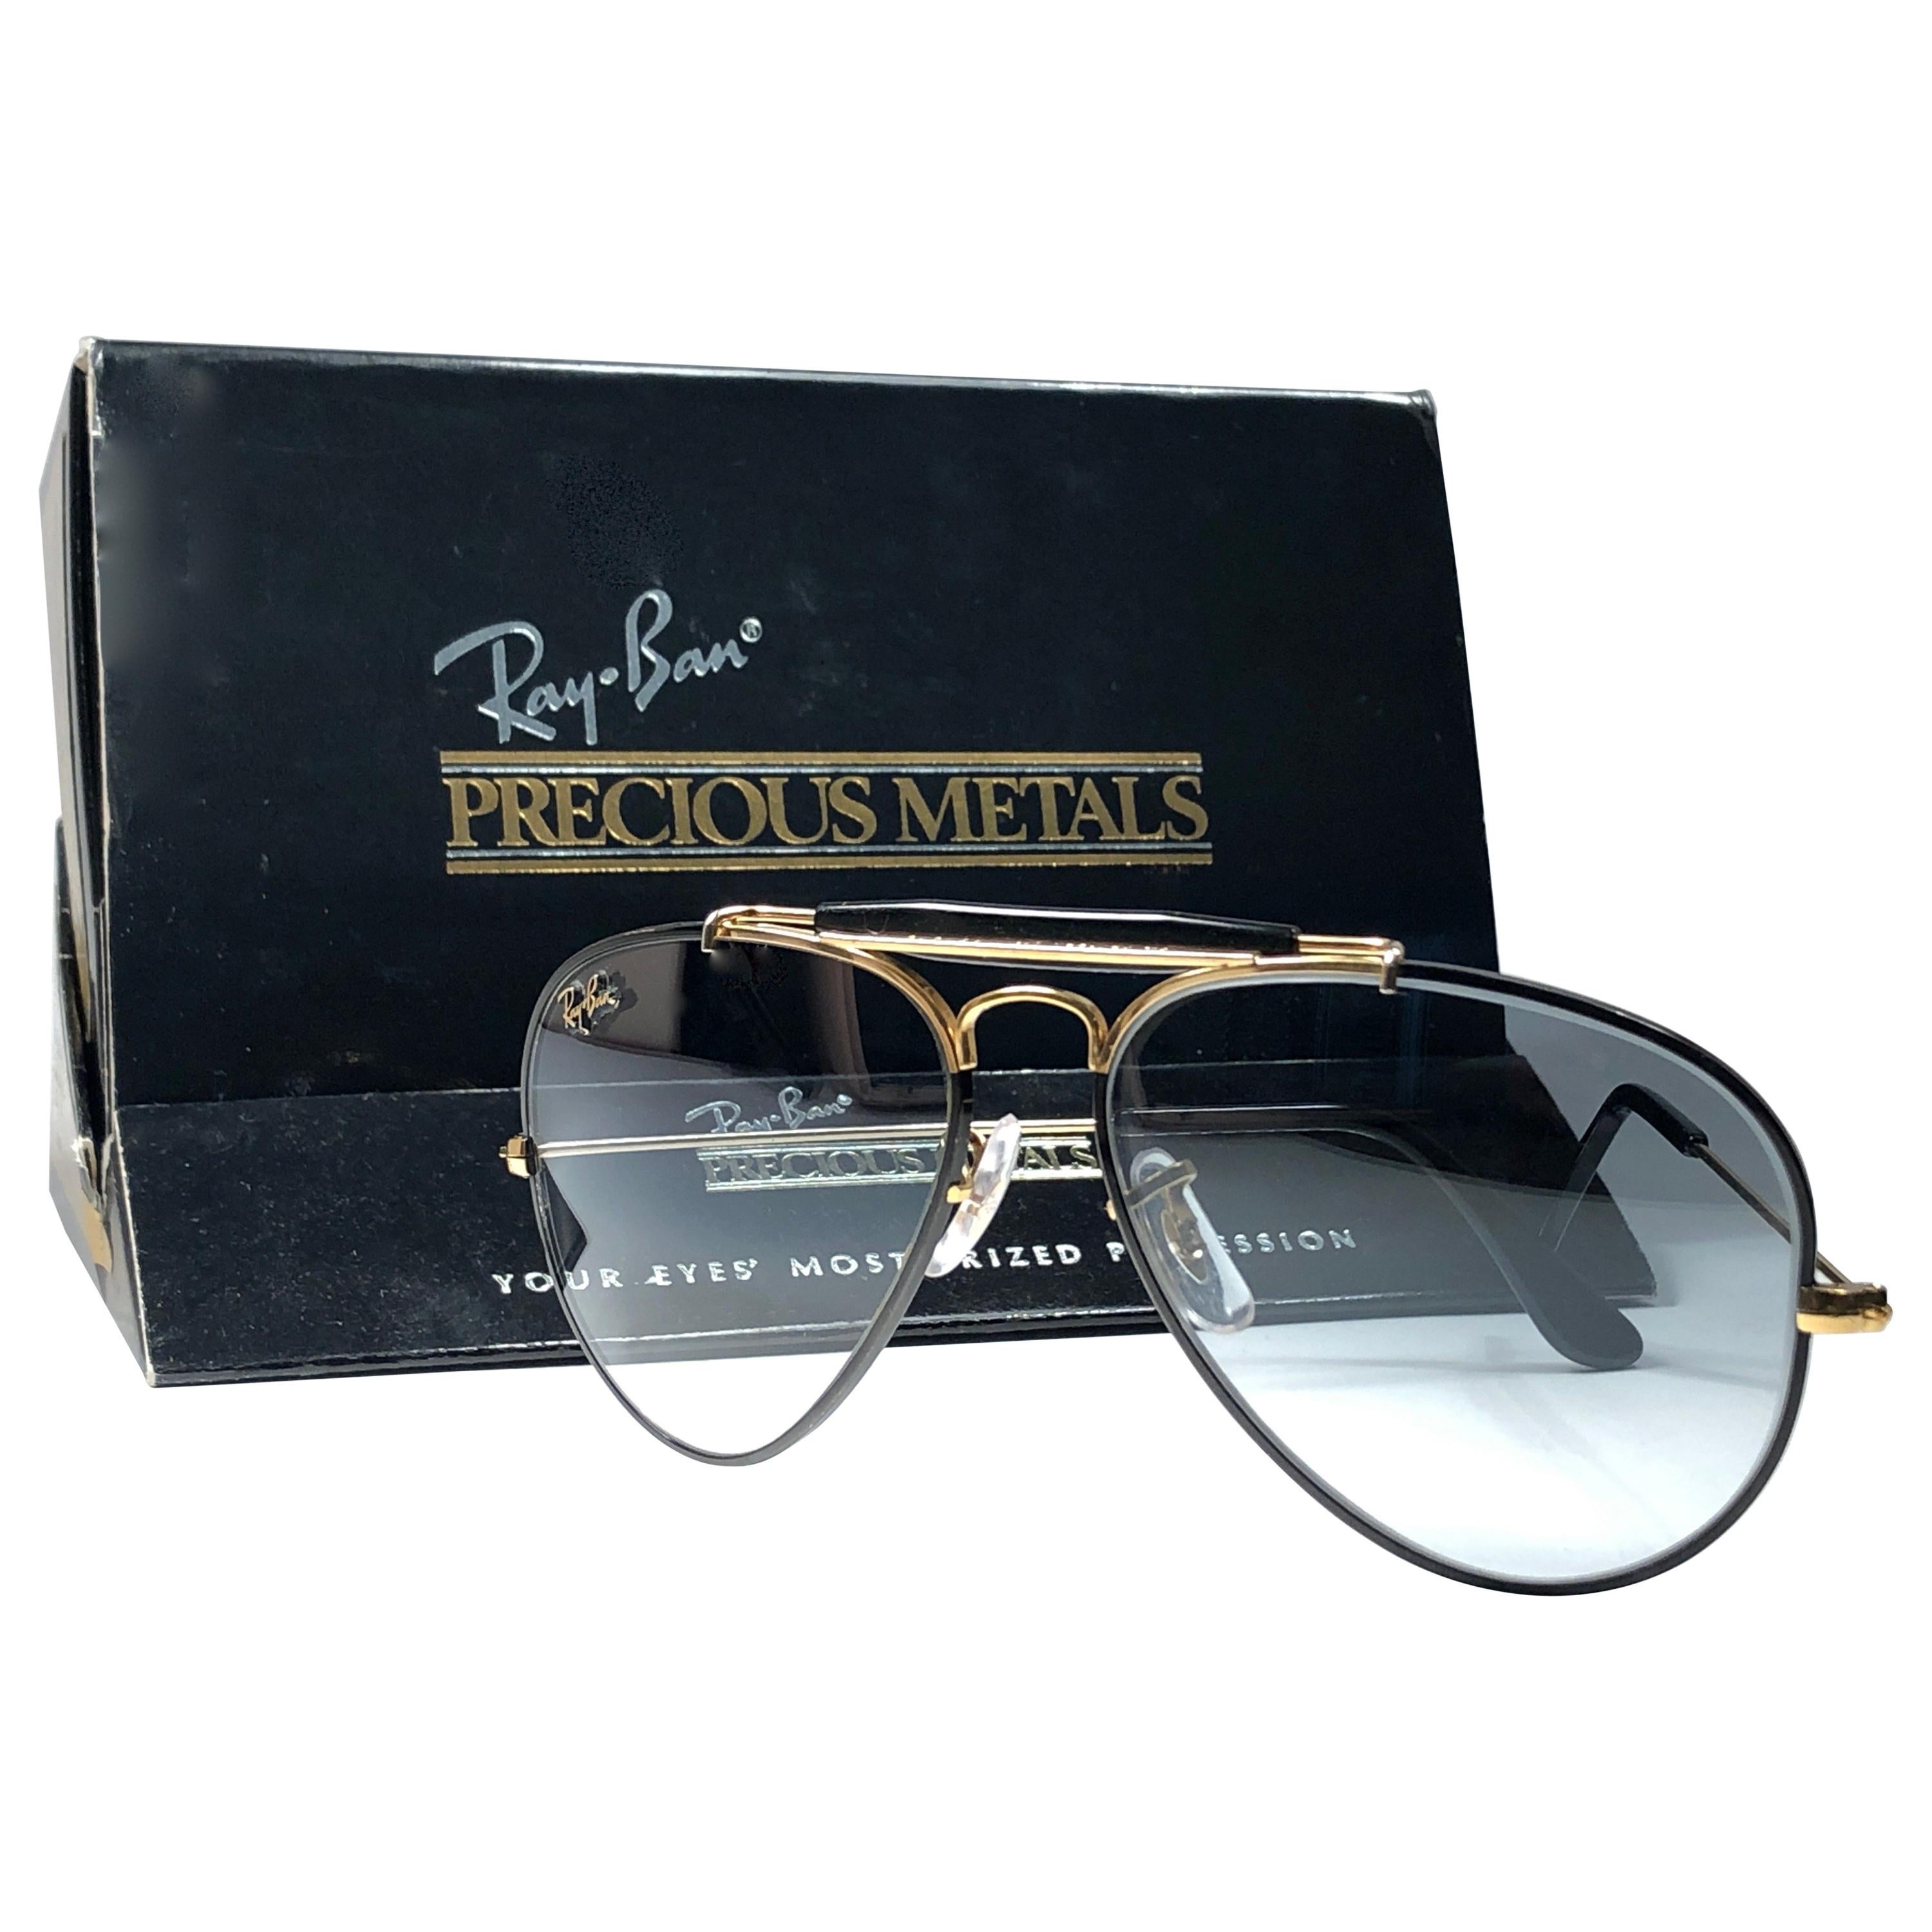 Vintage Ray Ban Precious Metals 24k Black & Gold B&L Outdoorsman 62' Sunglasses